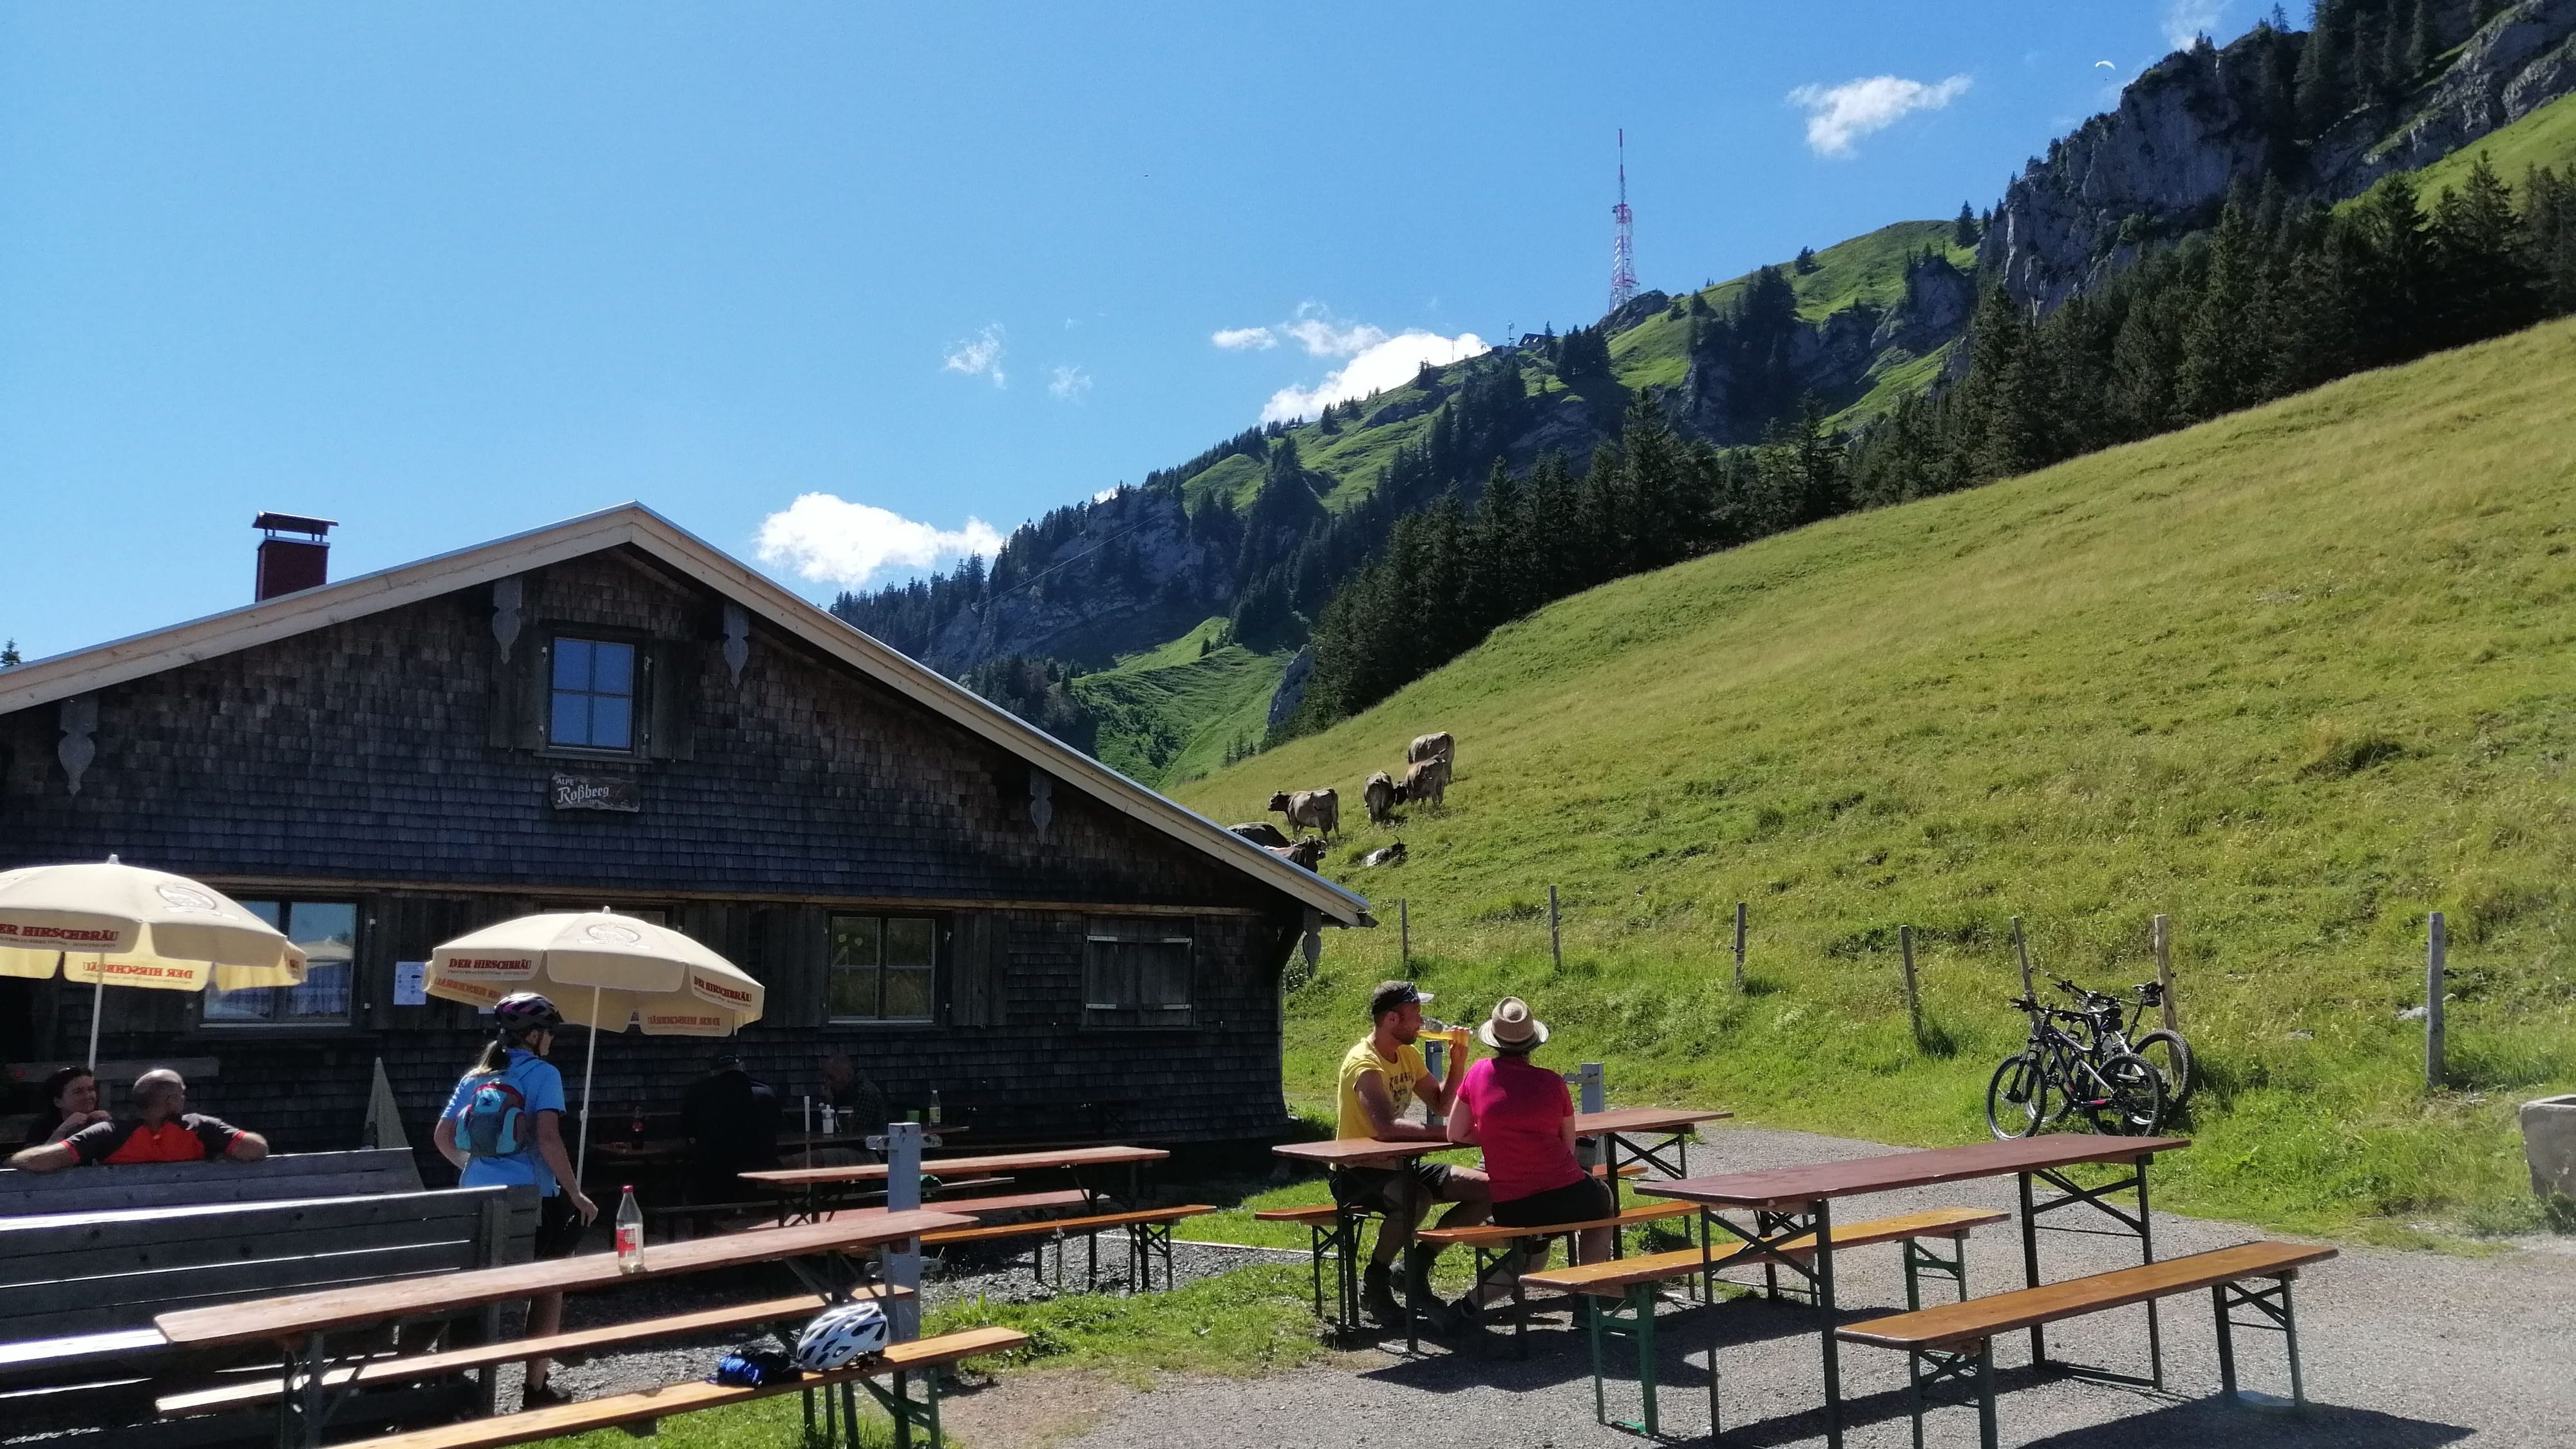 Berghütten in Bayern: Geheimtipp für Ihren nächsten Urlaub